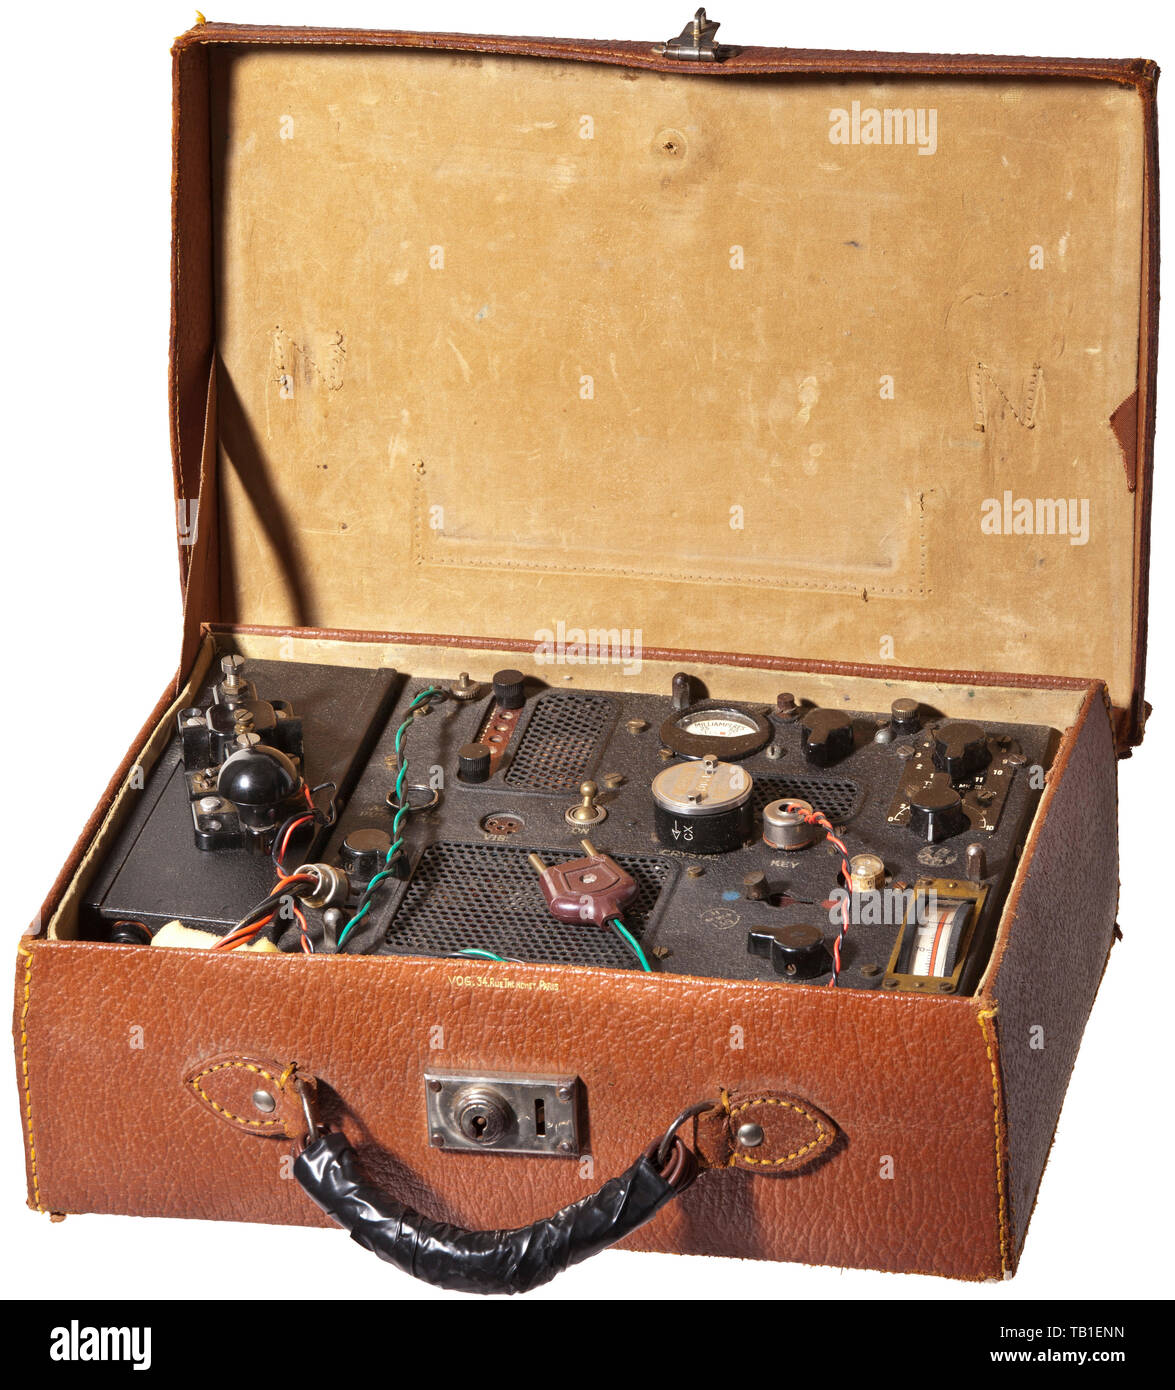 Ein Koffer radio, Typ A MK III, von den französischen Widerstand im Zweiten Weltkrieg. Schwarz lackierte Module im Metallgehäuse: Transceiver, das Netzteil und der Telegraph. Module sind komplett mit Schalter, Tasten und Stenciled Anweisungen. Das Typenschild serial Nr. MC 19600'. Voltmeter vom 1943 mit "Markierungen WD'. Kommt mit einer DC-5 Crystal und zwei tuning Einheiten. Radio installiert ist, in einem braunen Leder Koffer mit der Aufschrift "VOG - 34 Rue Tronchet Paris'. Abmessungen 24 x 34 x 12 cm. Radio wurde teilweise neu verkabelt. Funktionalität nicht getestet. Ein paar Schrauben fehlen. Seltene, Editorial-Use - Nur Stockfoto